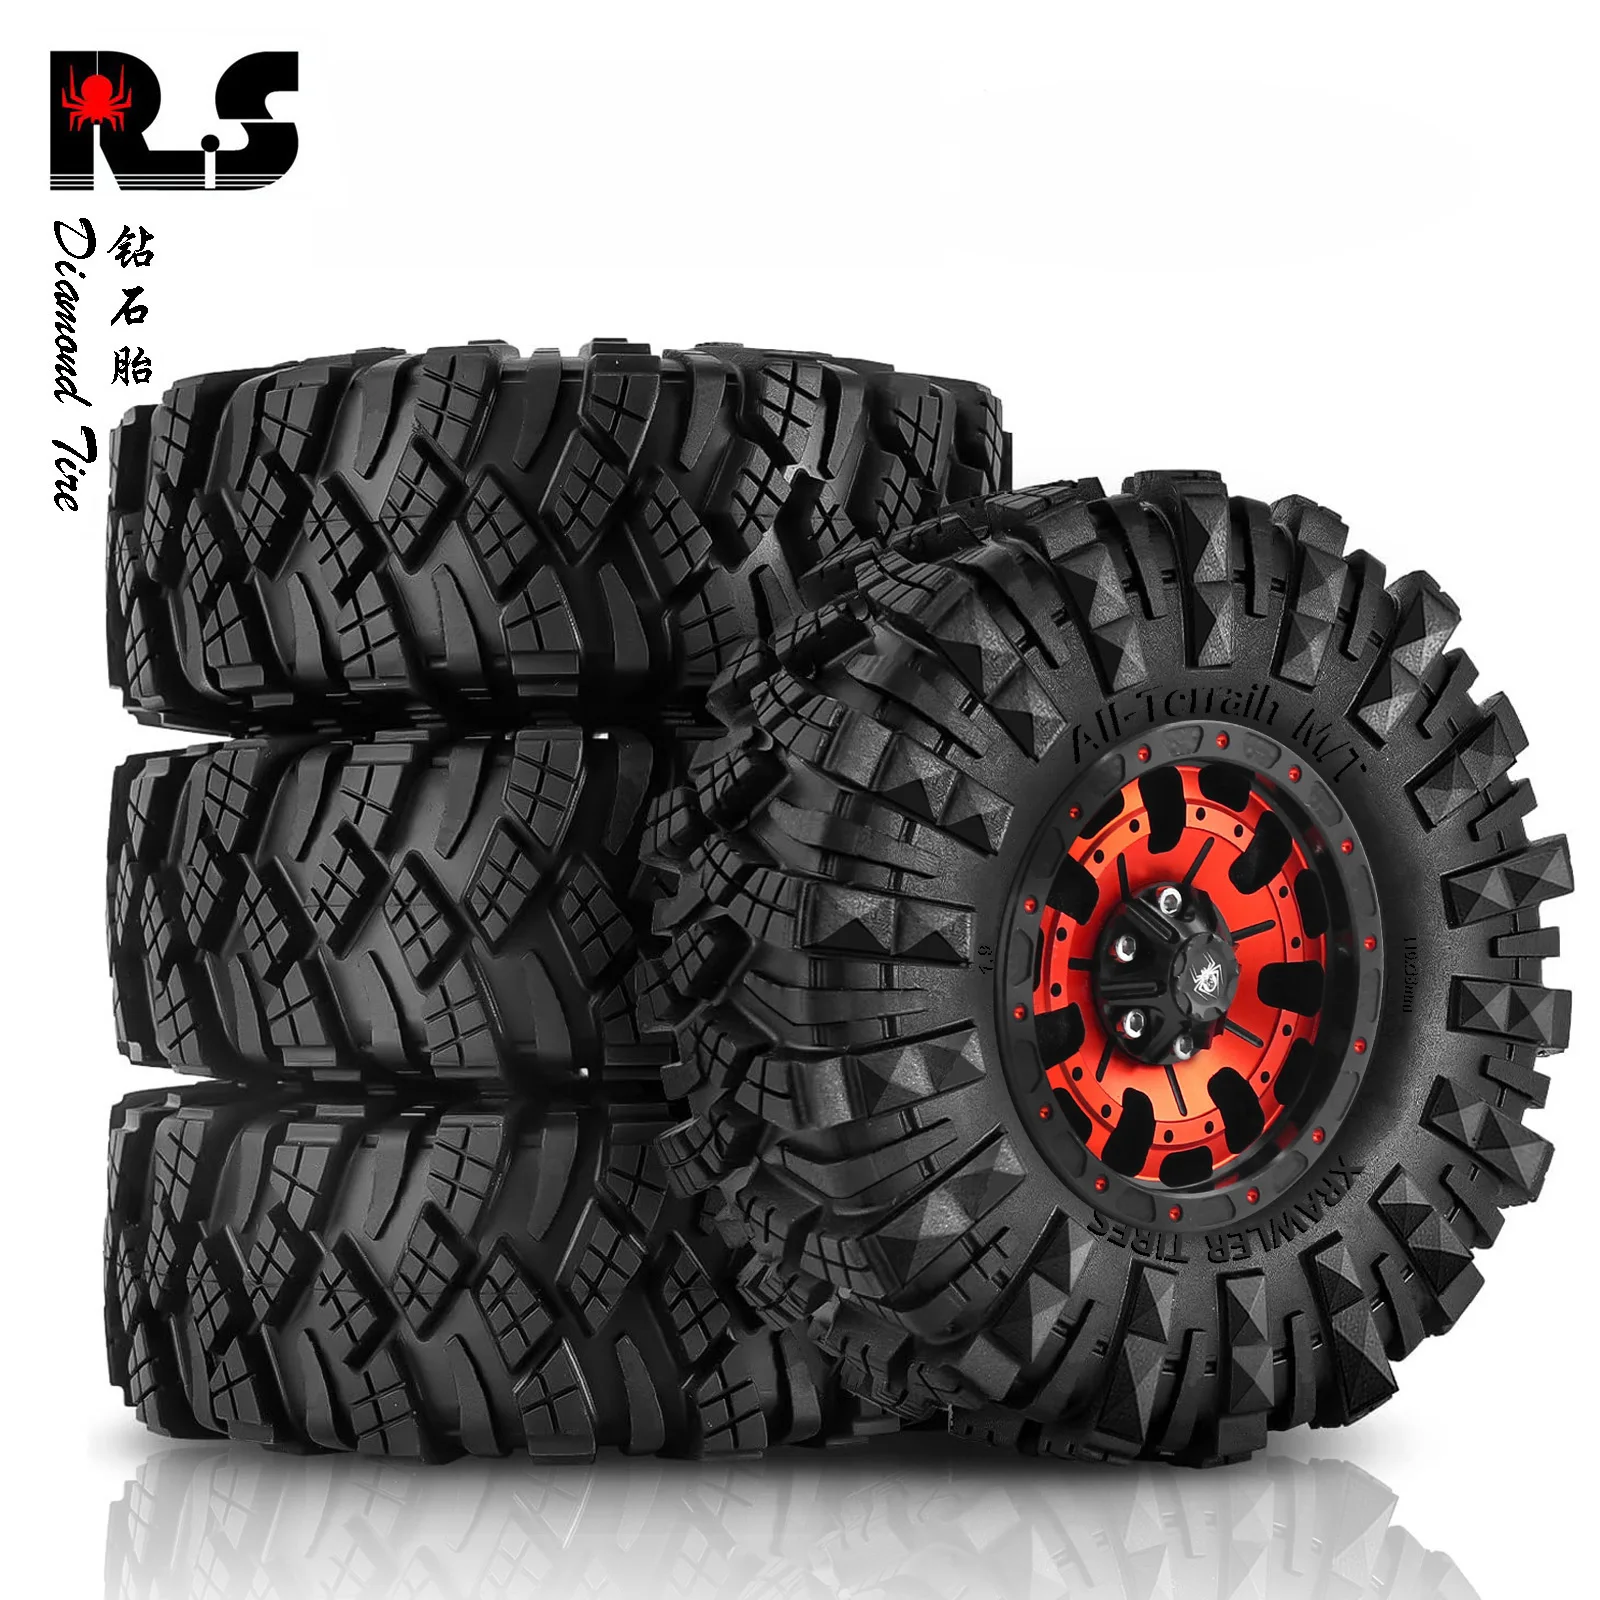 

4PCS 1.9-inch Wheels & Tires Beadlock Hub Rim for 1/10 RC Crawler Car AXIAL SCX10 90046 Traxxas TRX4 Defender RC4WD D90 TF2 Part